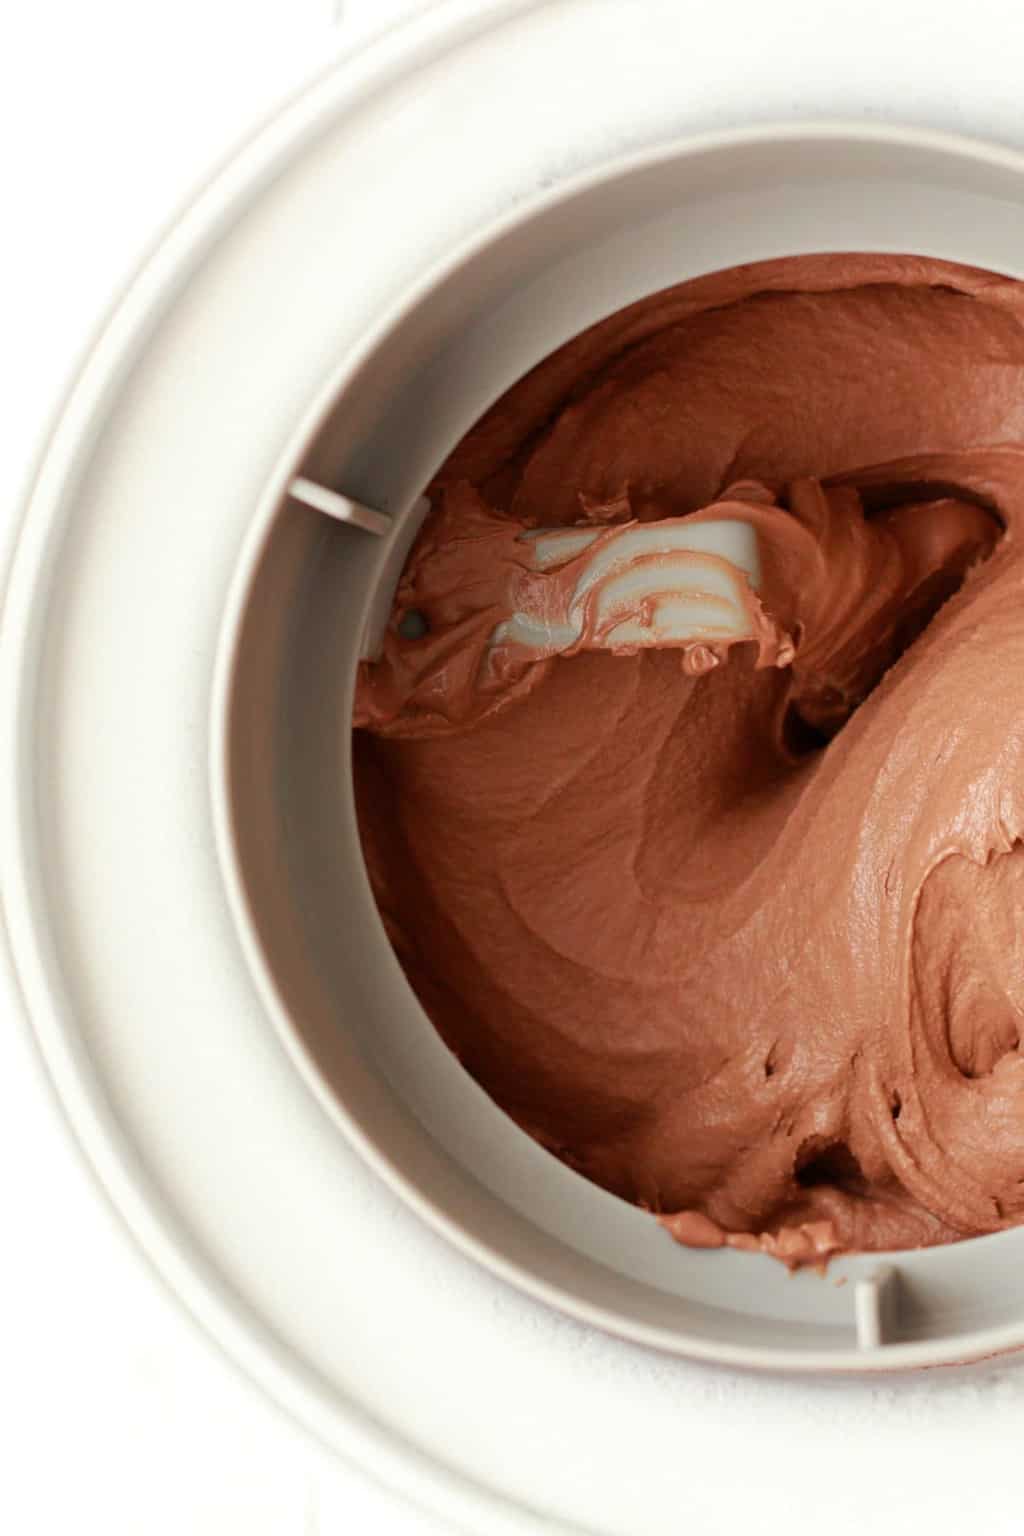 Vegan chocolate ice cream churning in an ice cream machine. 